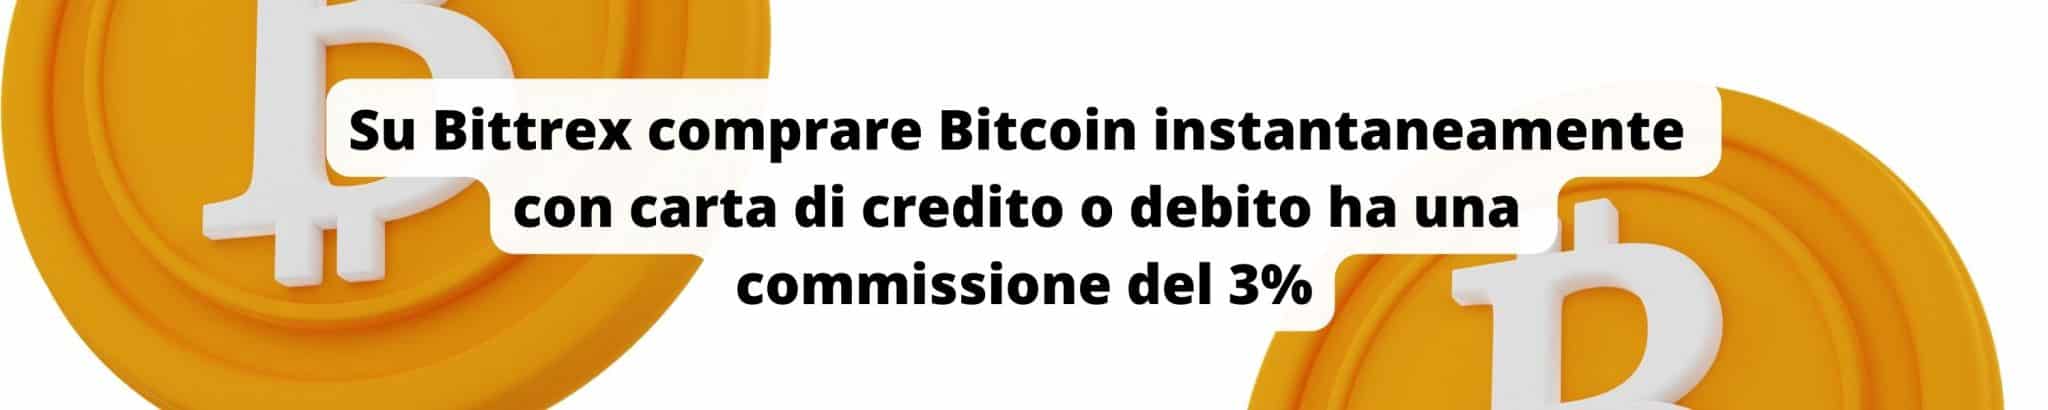 Comprare Bitcoin su Bittrex con carta ha una commissione del 3%